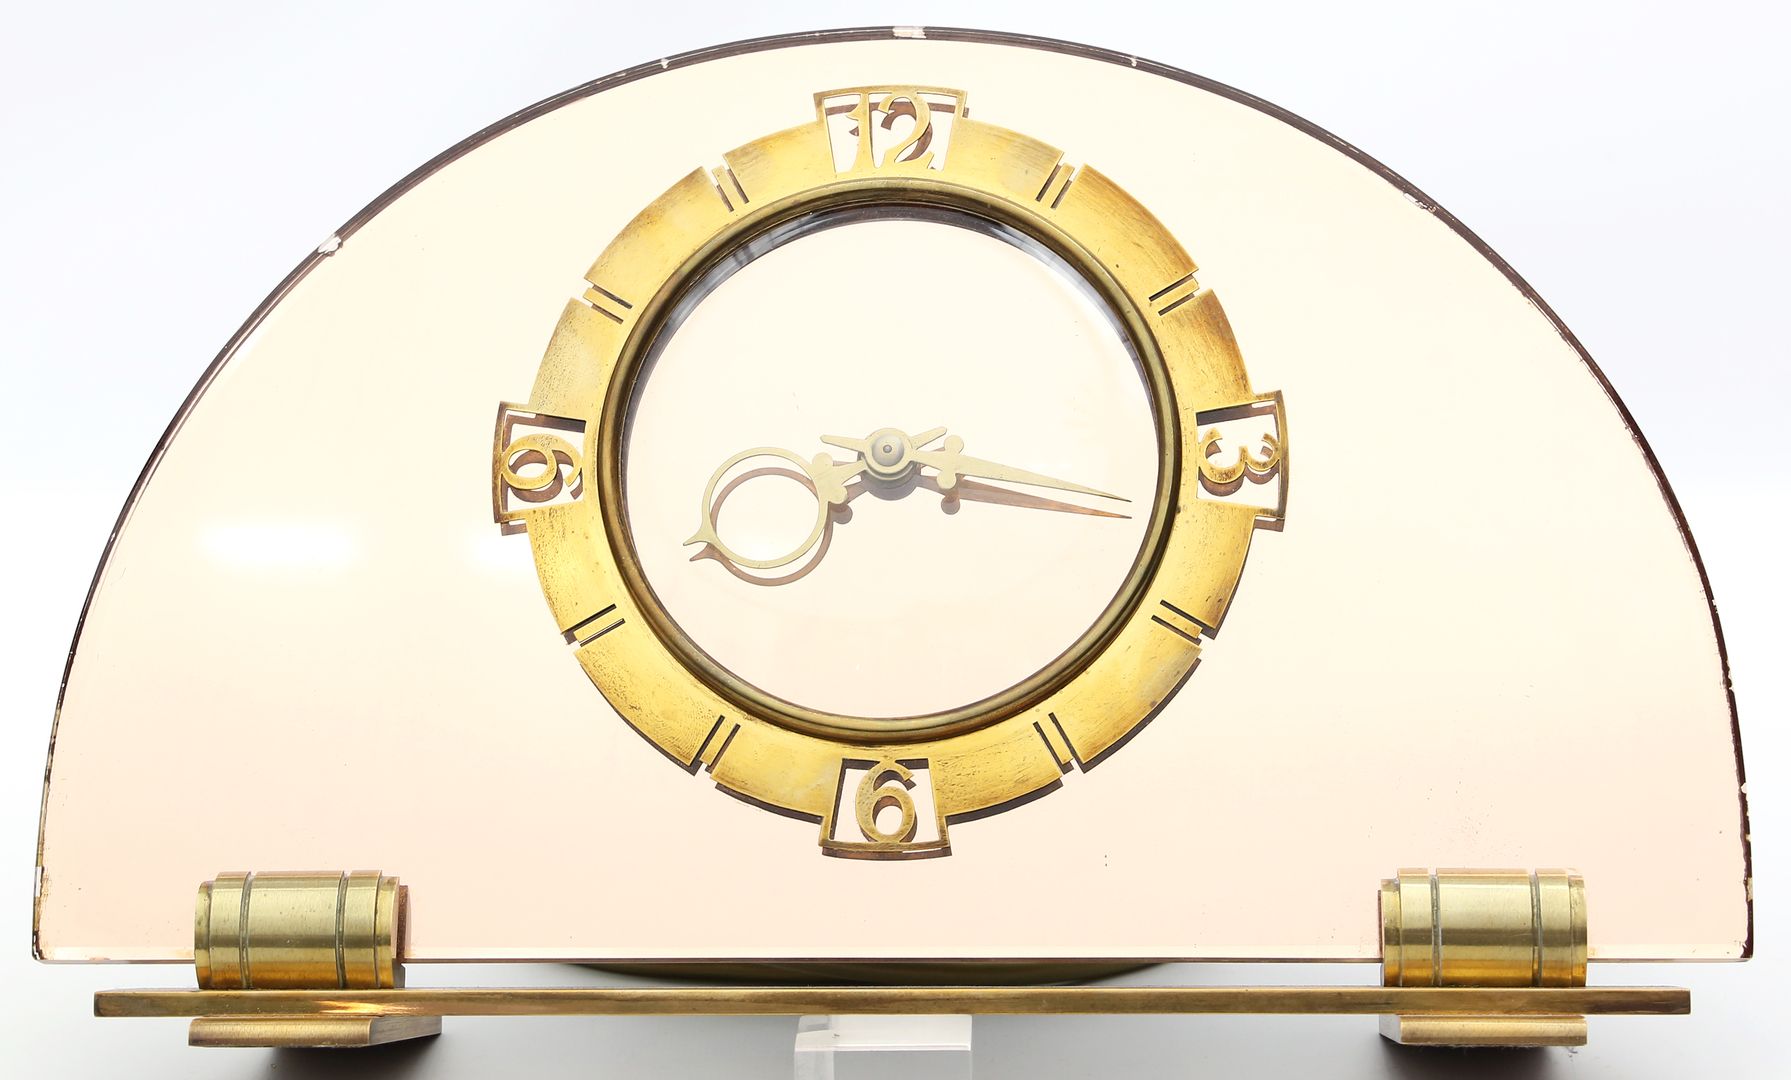 Tischuhr "Smiths English Clocks".